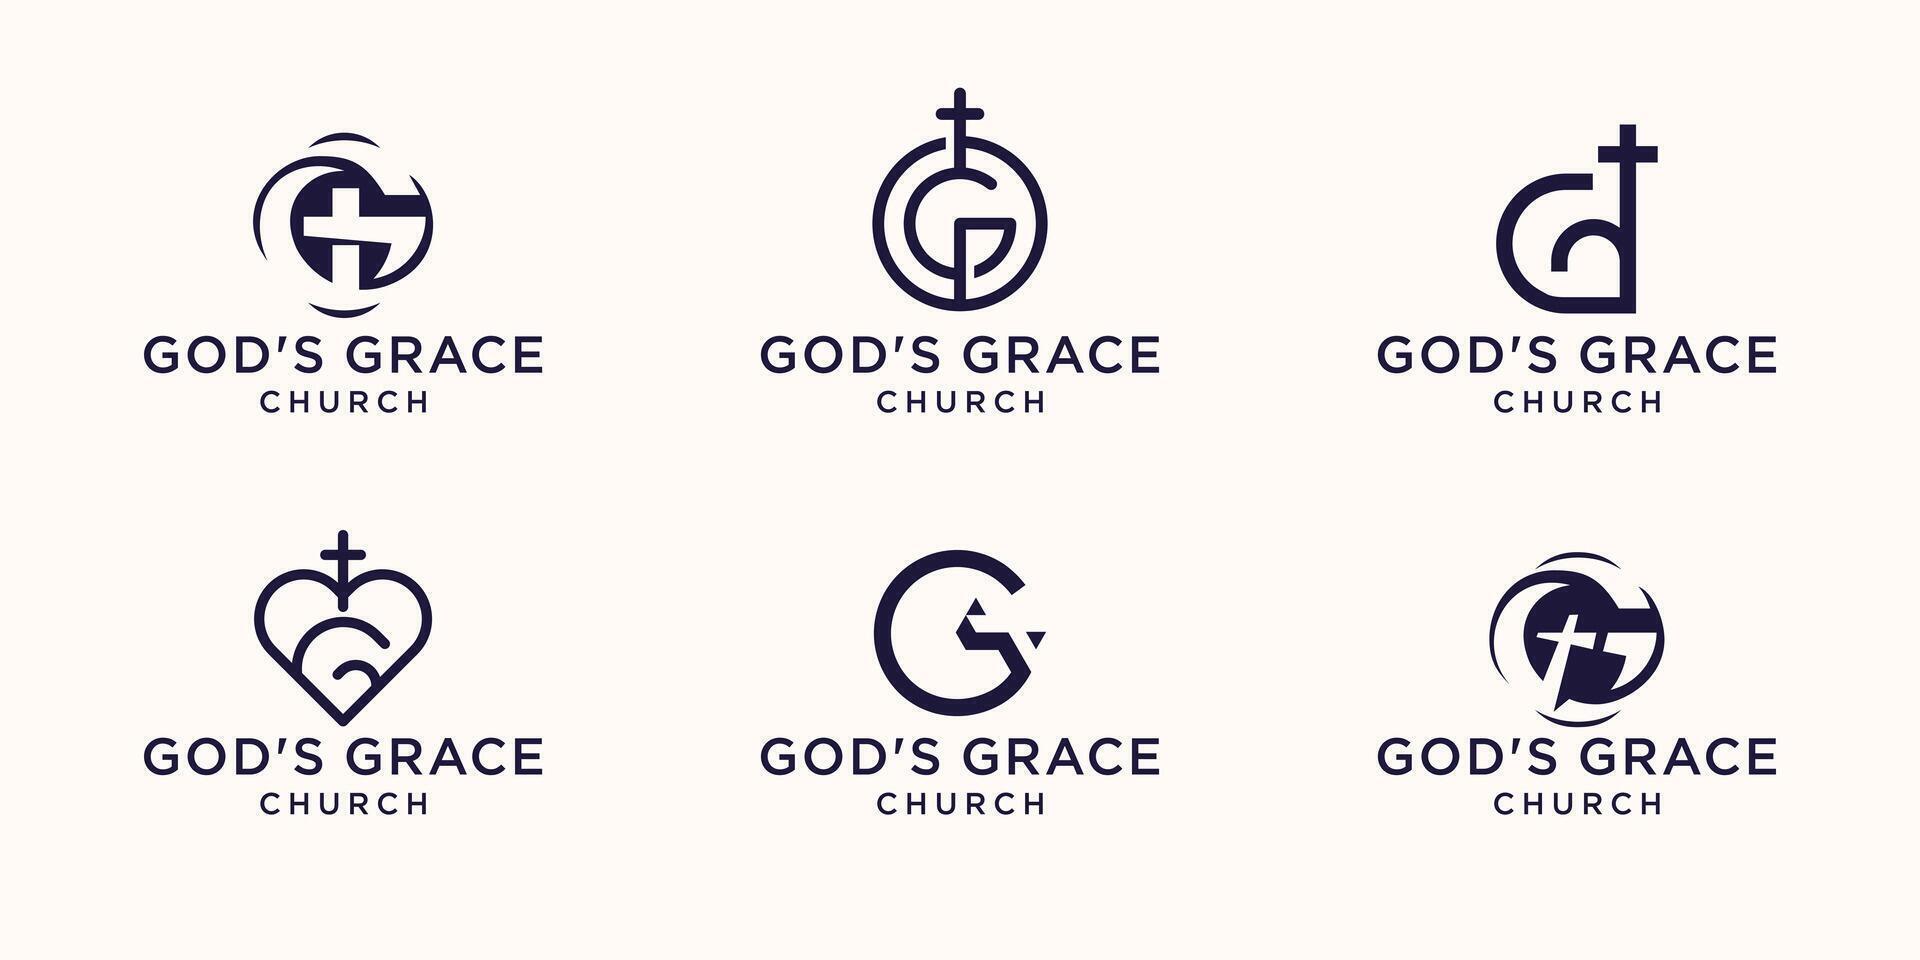 impostato di lettera marchio logo lettera g combinare con attraversare cristiano, Chiesa Gesù attraversare vangelo simbolo logo design modello. vettore